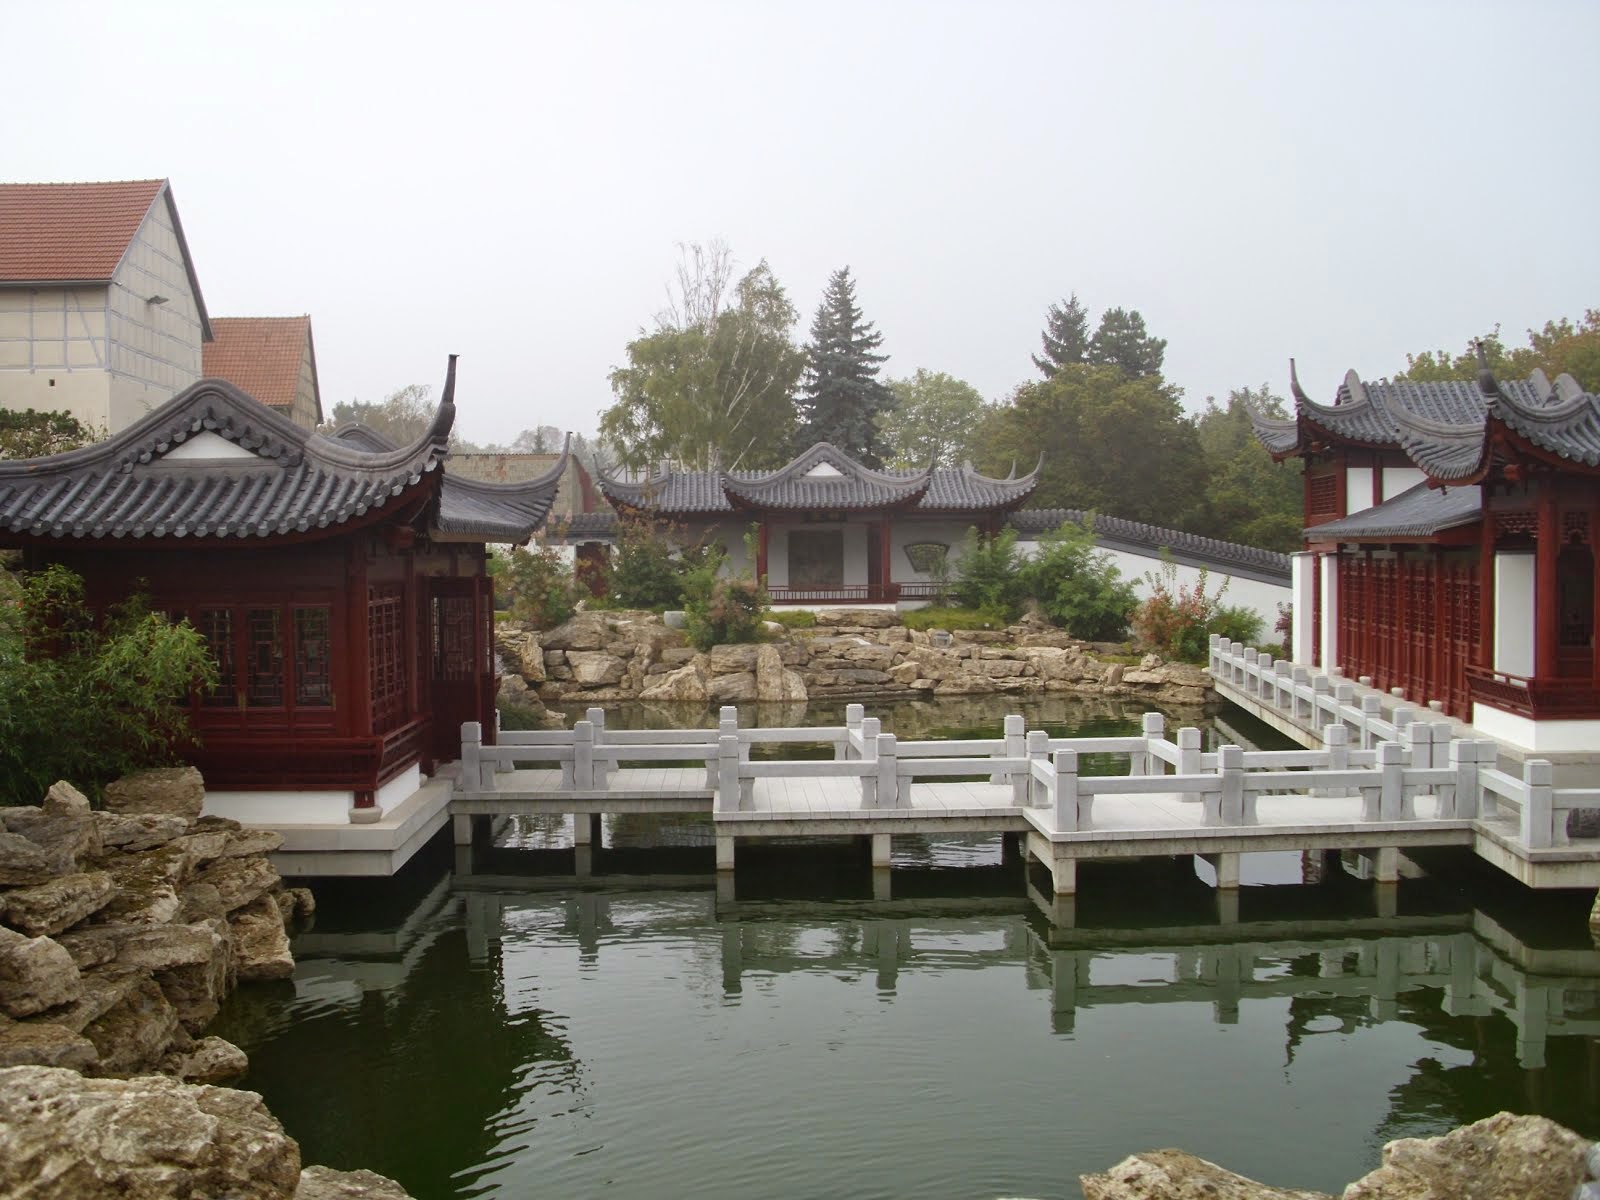 Chinesischer Garten in Weißensee